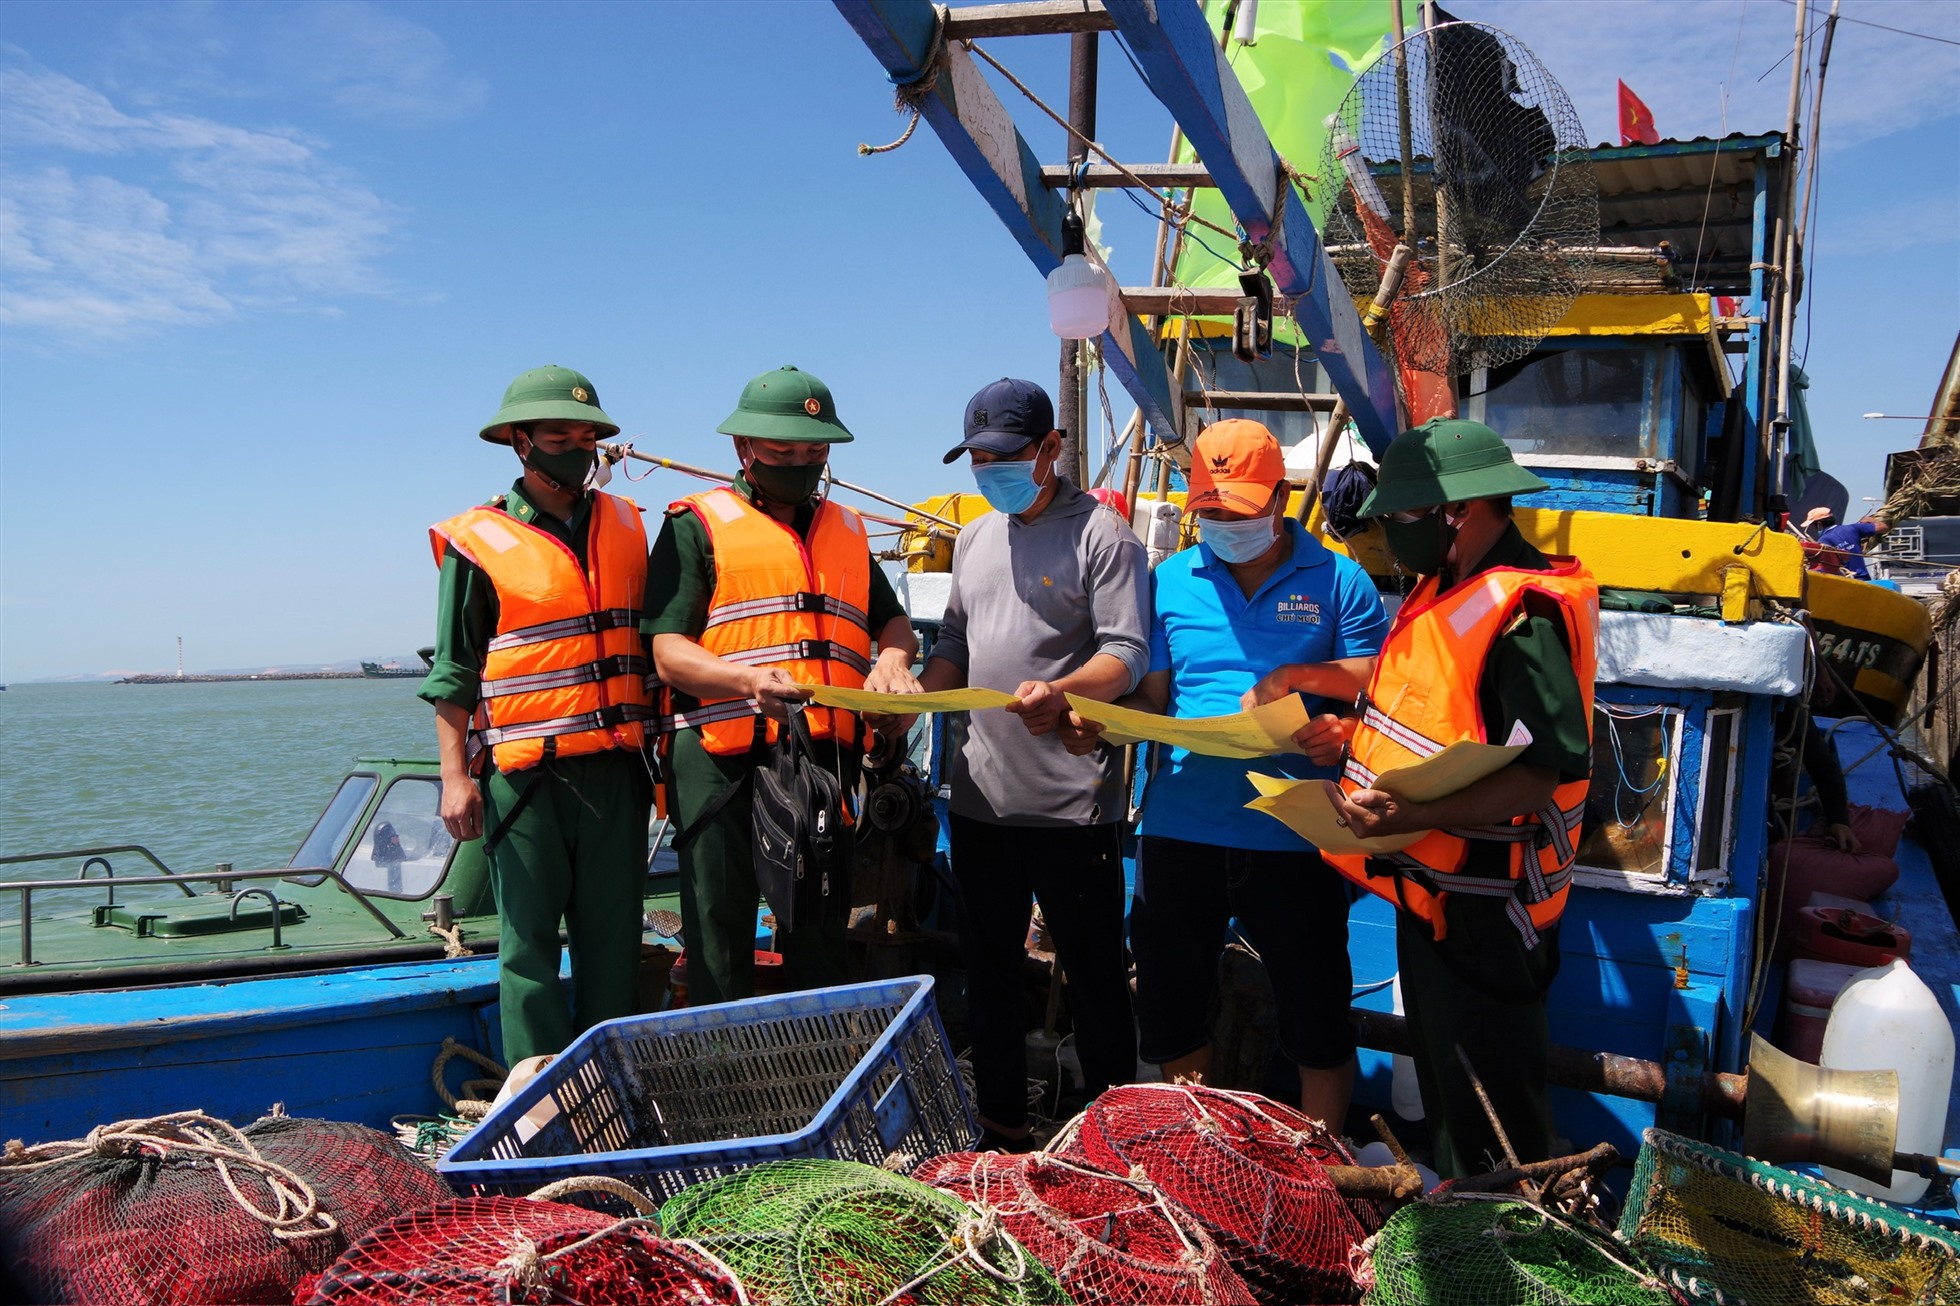 Bộ đội Biên phòng tỉnh Bình Thuận tuyên truyền đến các chủ tàu cá về phòng chống IUU. Ảnh: Duy Tuấn